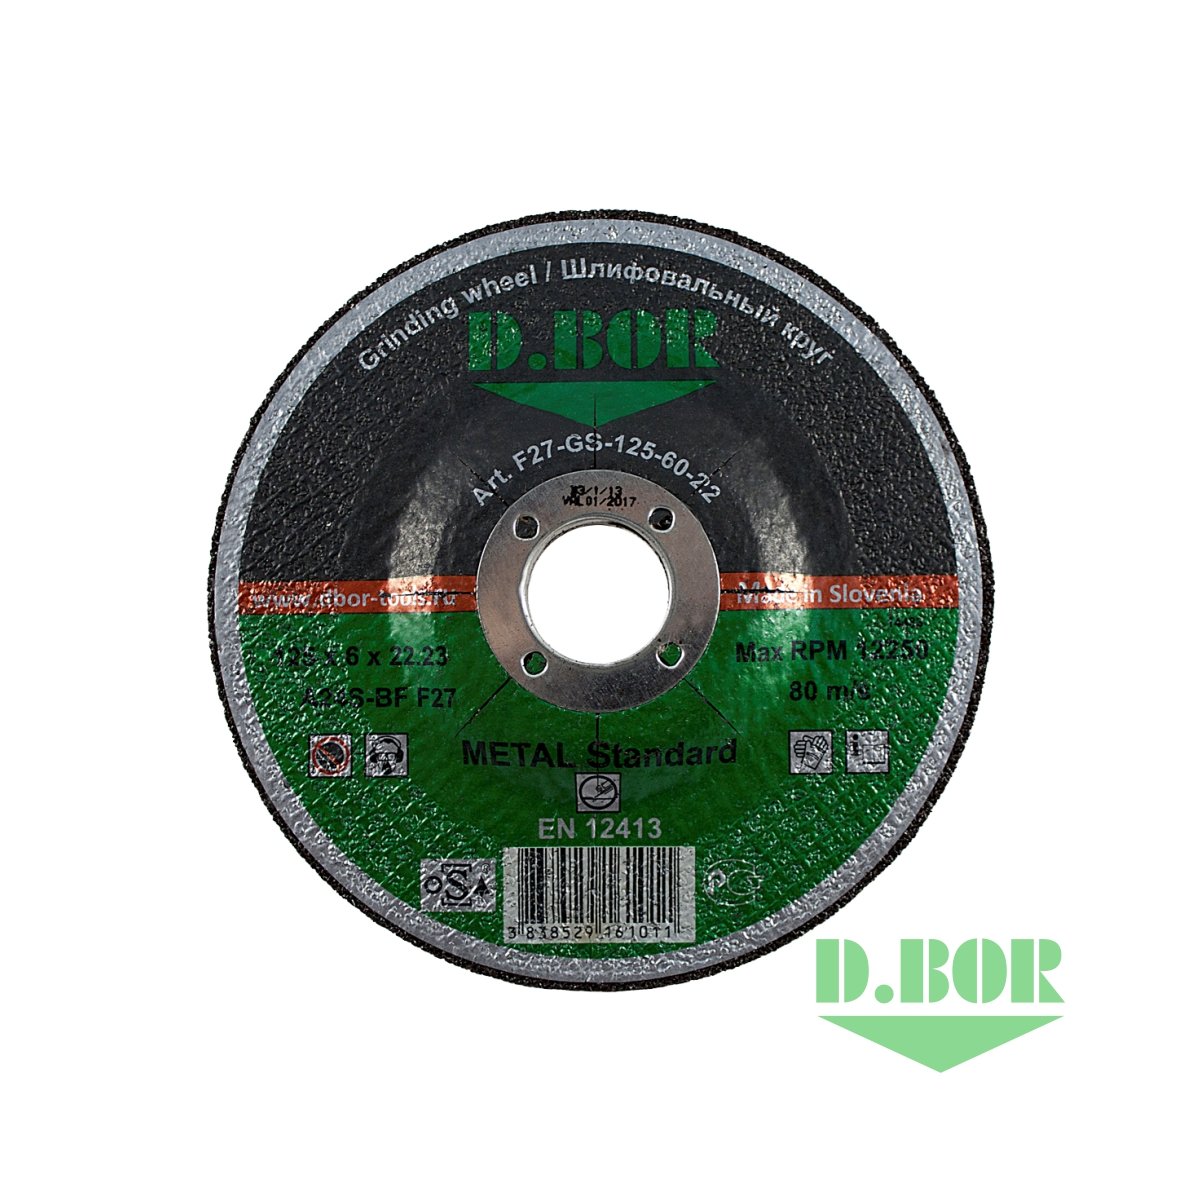 Отрезной диск по металлу METAL Standard A60T-BF, F41, 125x1,0x22,23 (арт. F41-MS-125-10-22) "D.BOR"